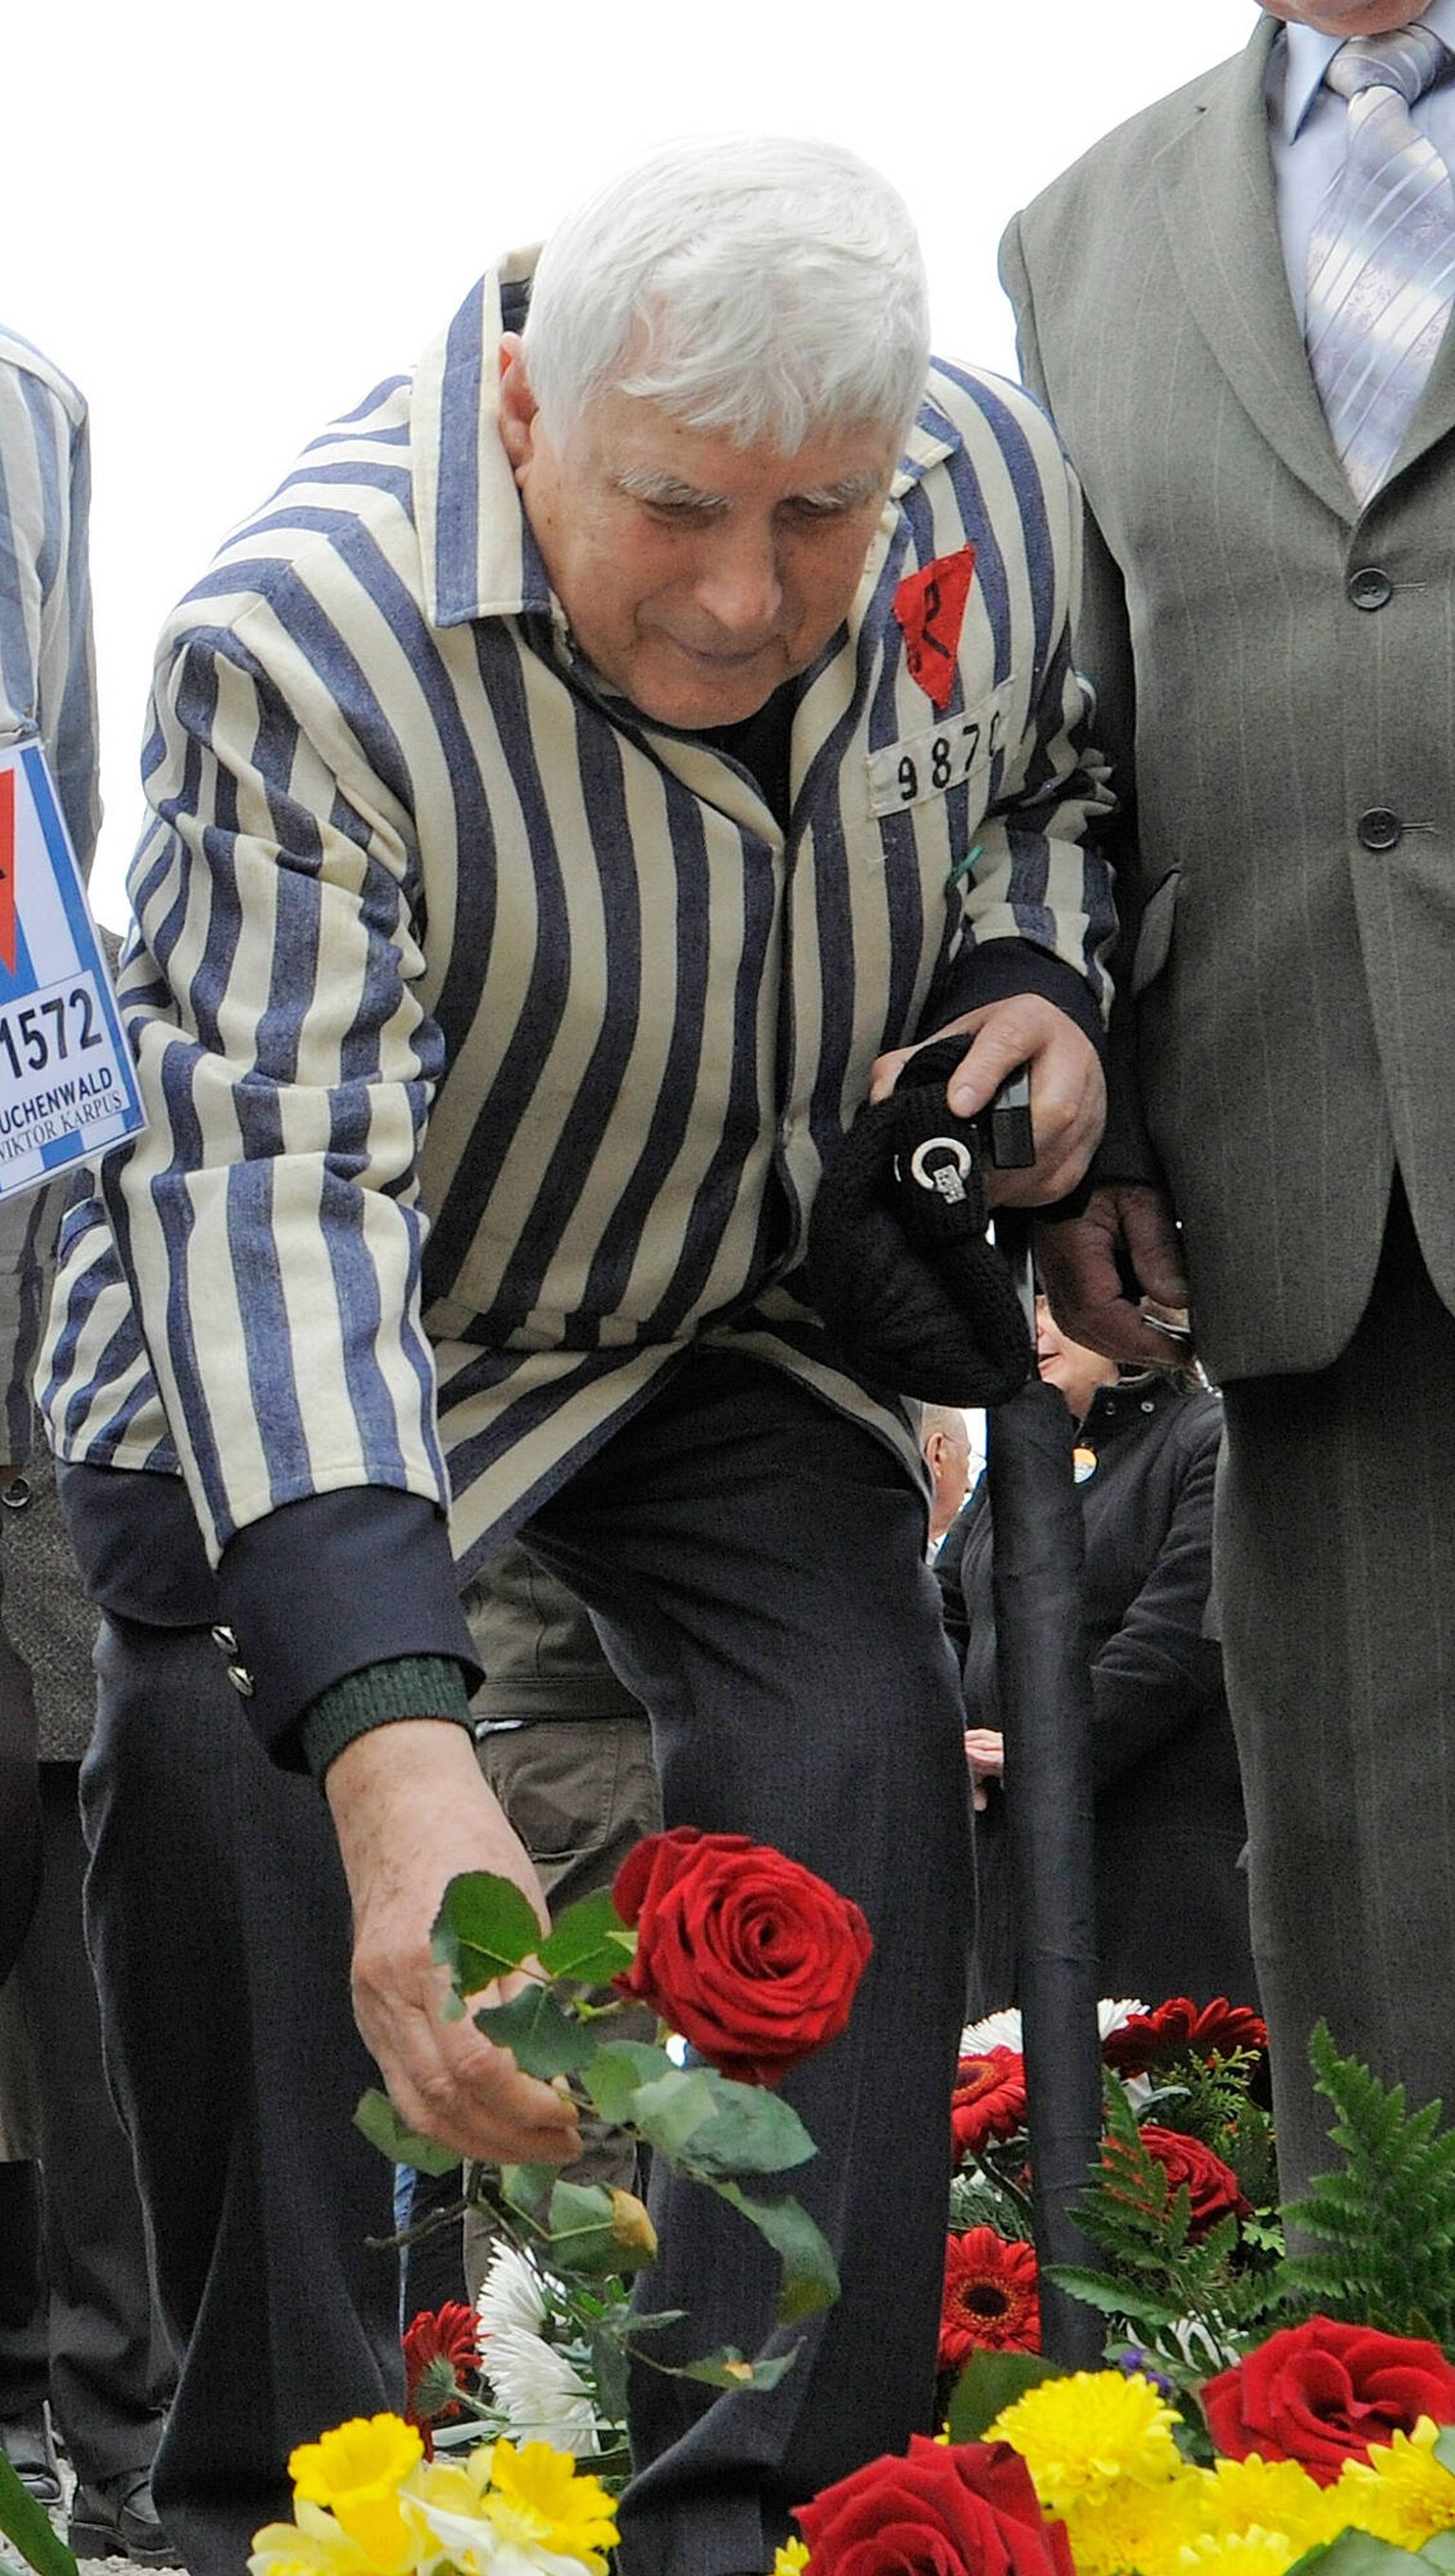 Neljas koonduslaagris ellu jäänud ukrainlane, 96-aastane Boris Romantšenko kaotas elu, kui Vene väed pommitasid Harkivit.  Pildil on ta 17. aprillil 2011 Buchenwaldi koonduslaagri vabastamise mälestussündmusel